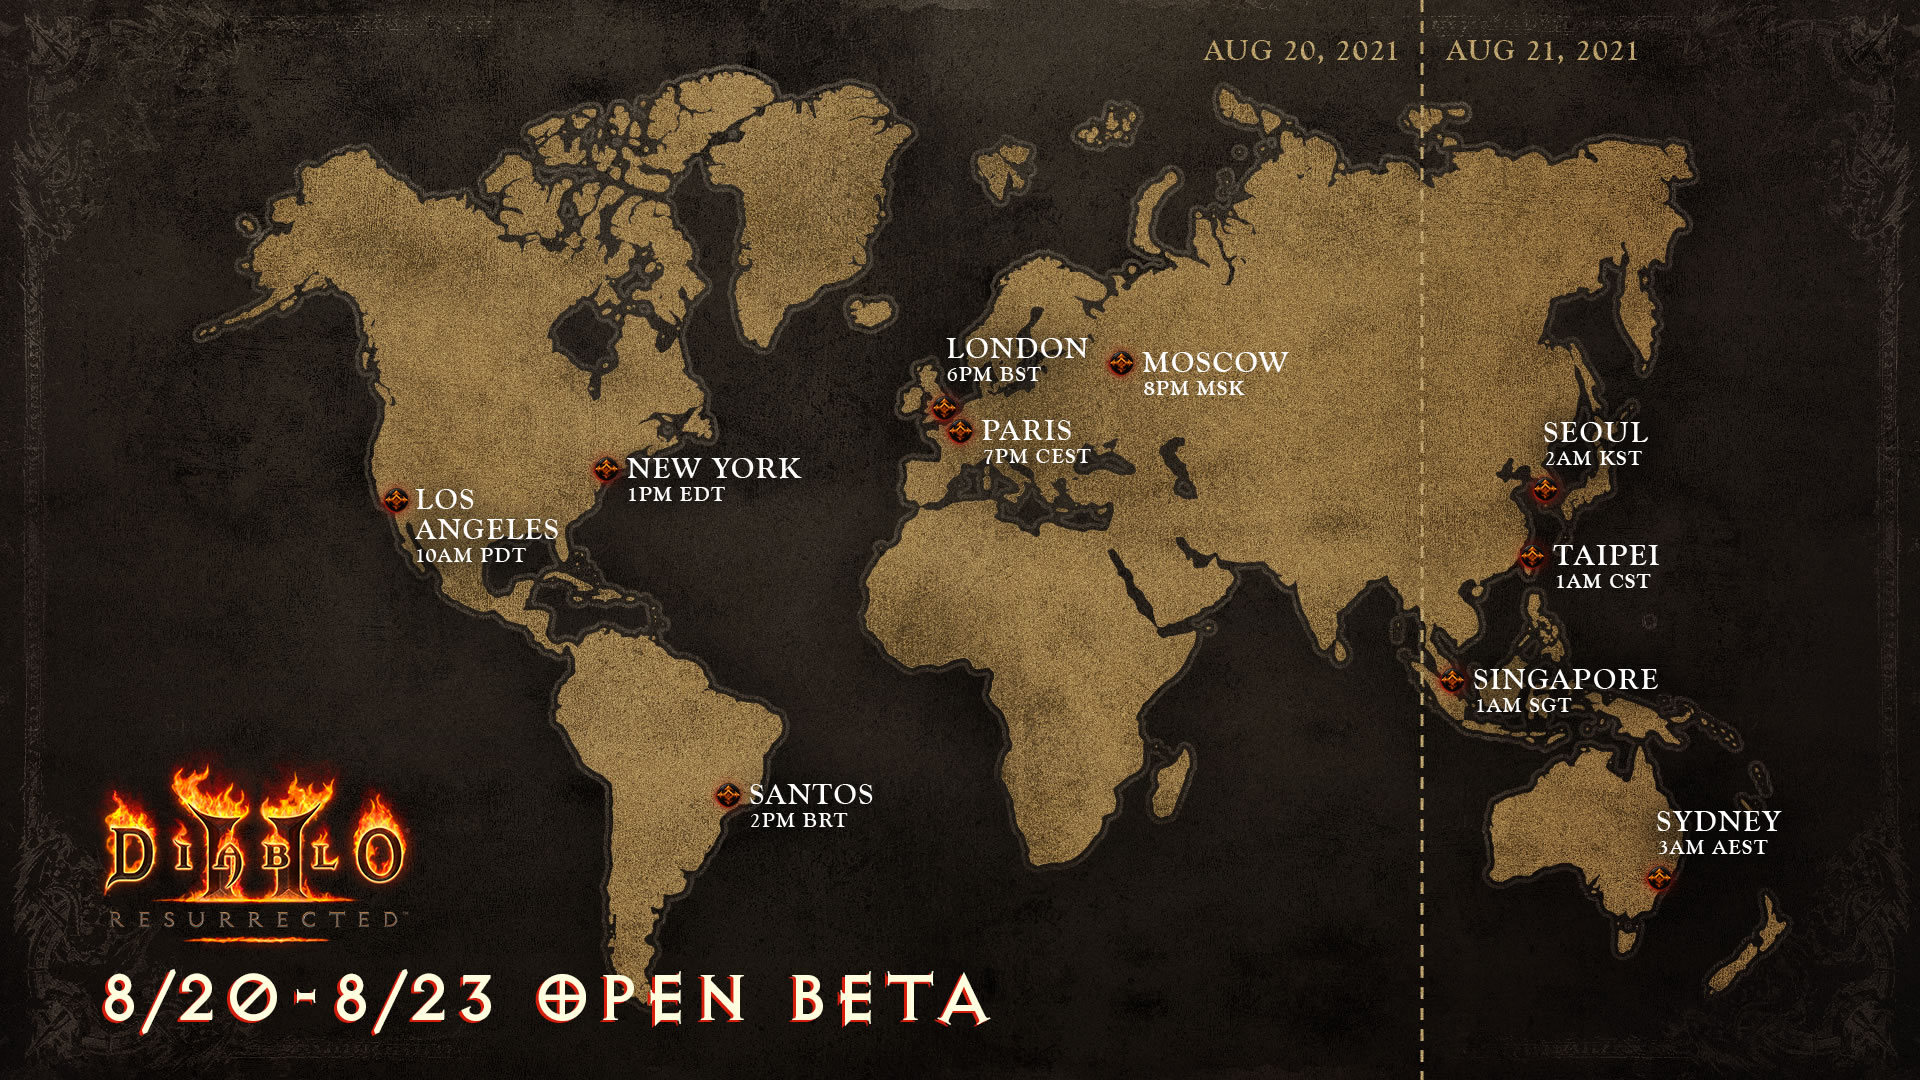 Diablo II: Resurrected open beta begins on August 20th